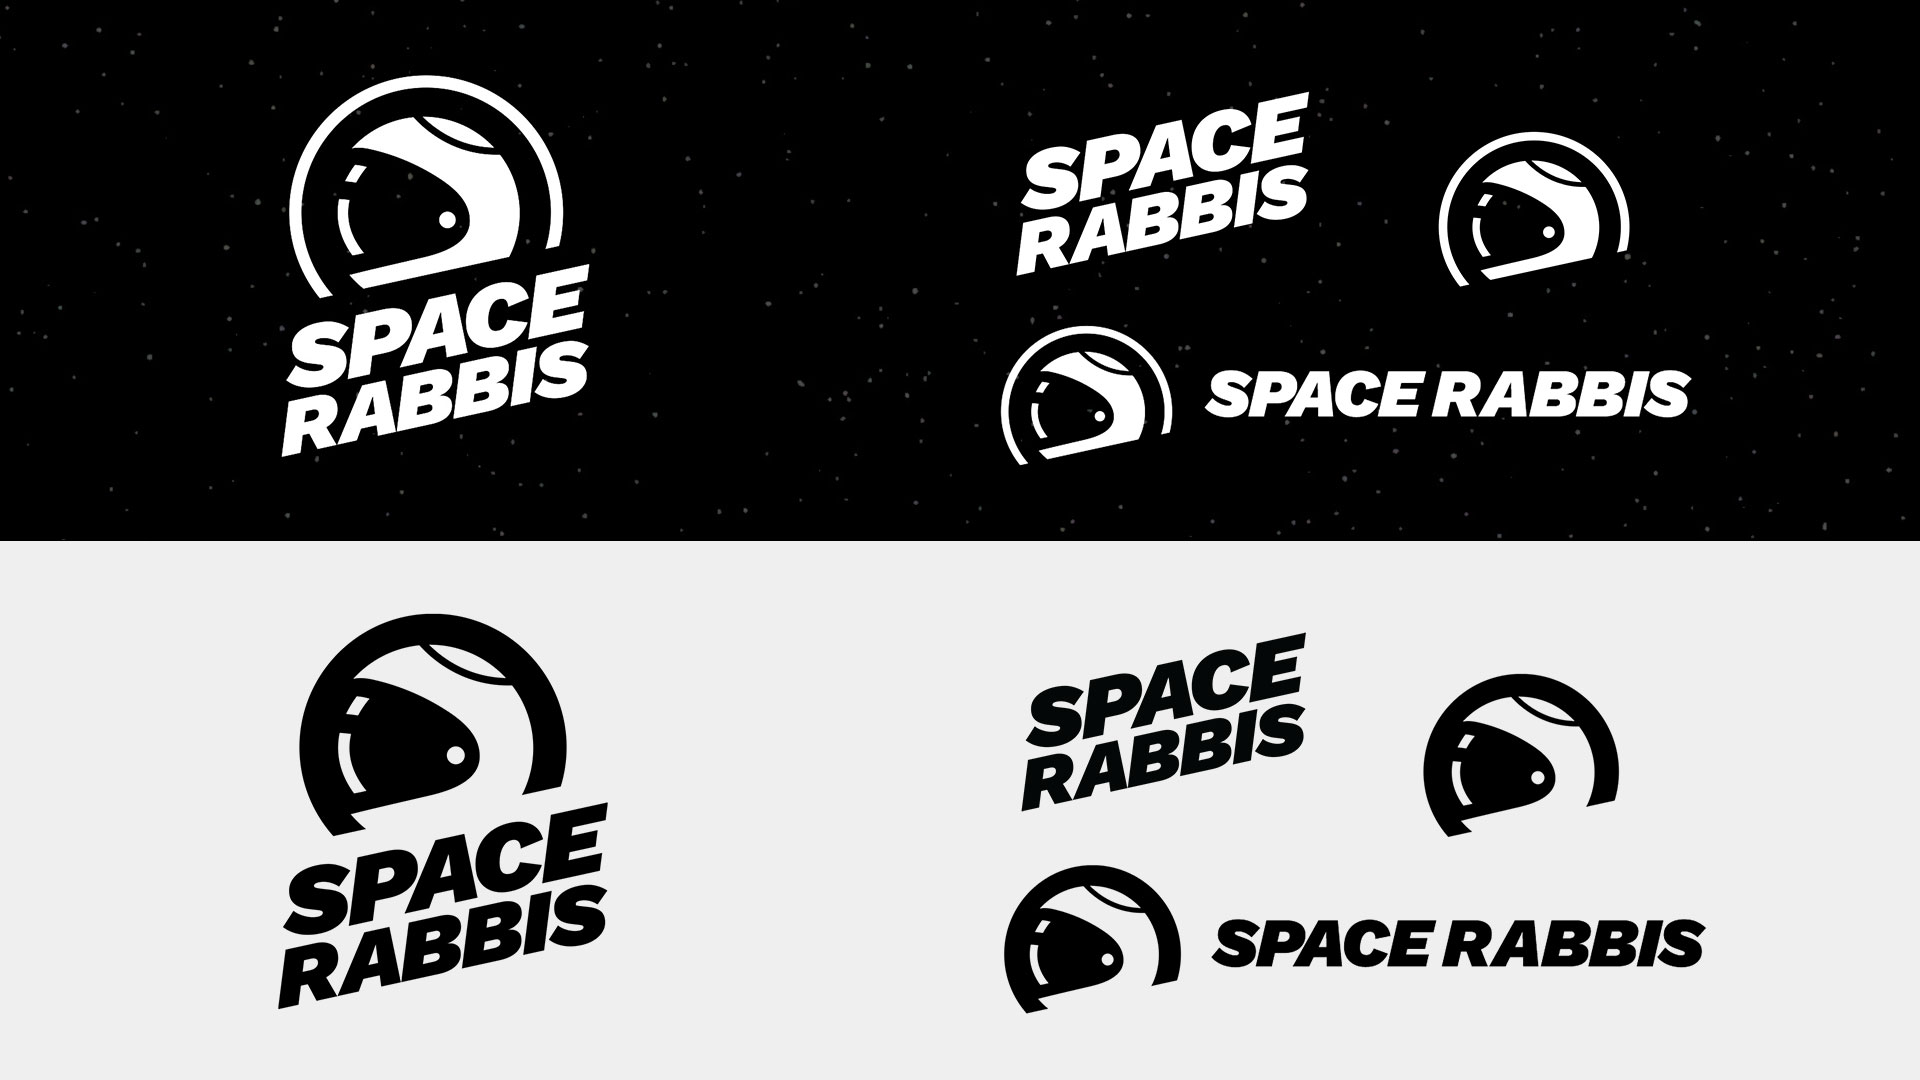 SpaceRabbis_logos_16x9_5